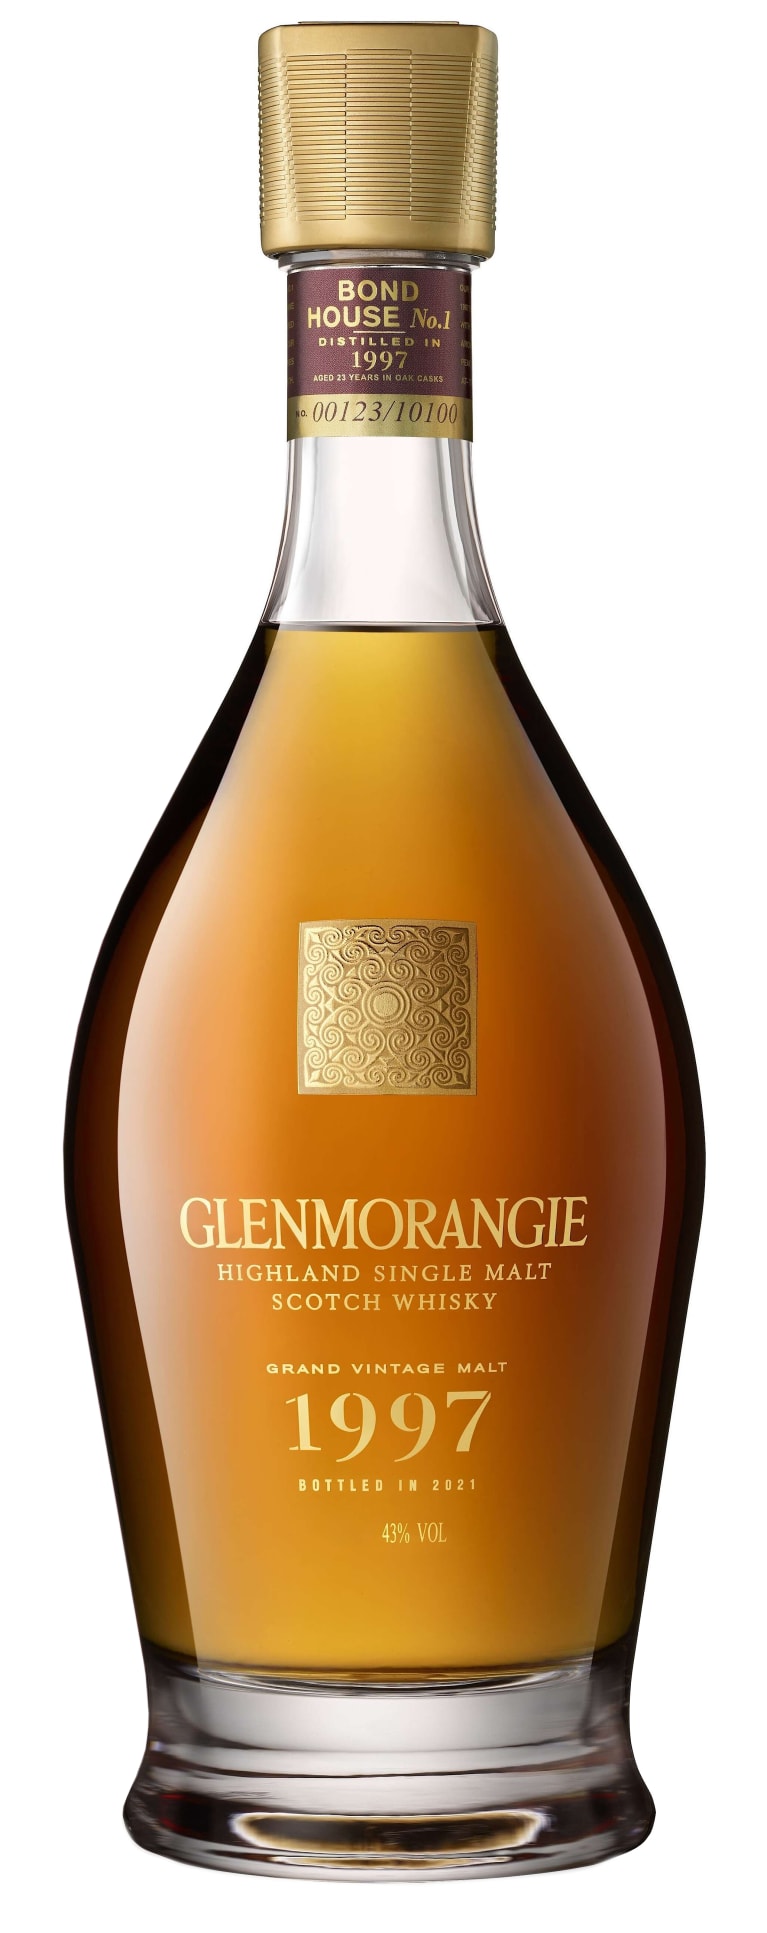 Glenmorangie Grand Vintage Single Malt Scotch Whisky, Highlands